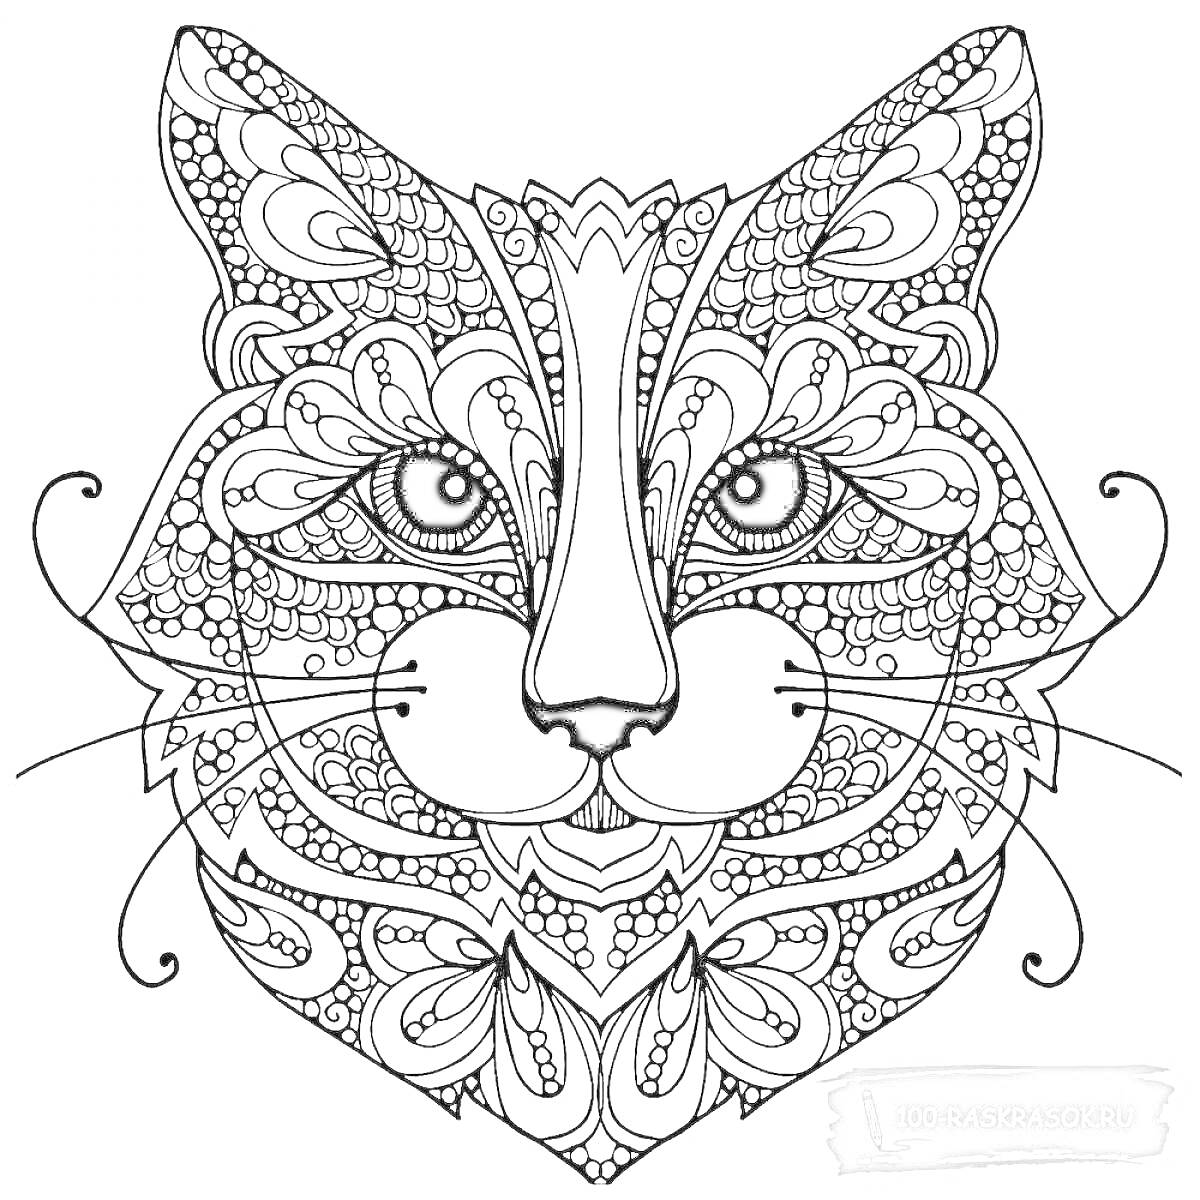 Раскраска Декоративная кошачья голова с орнаментом в стиле антистресс